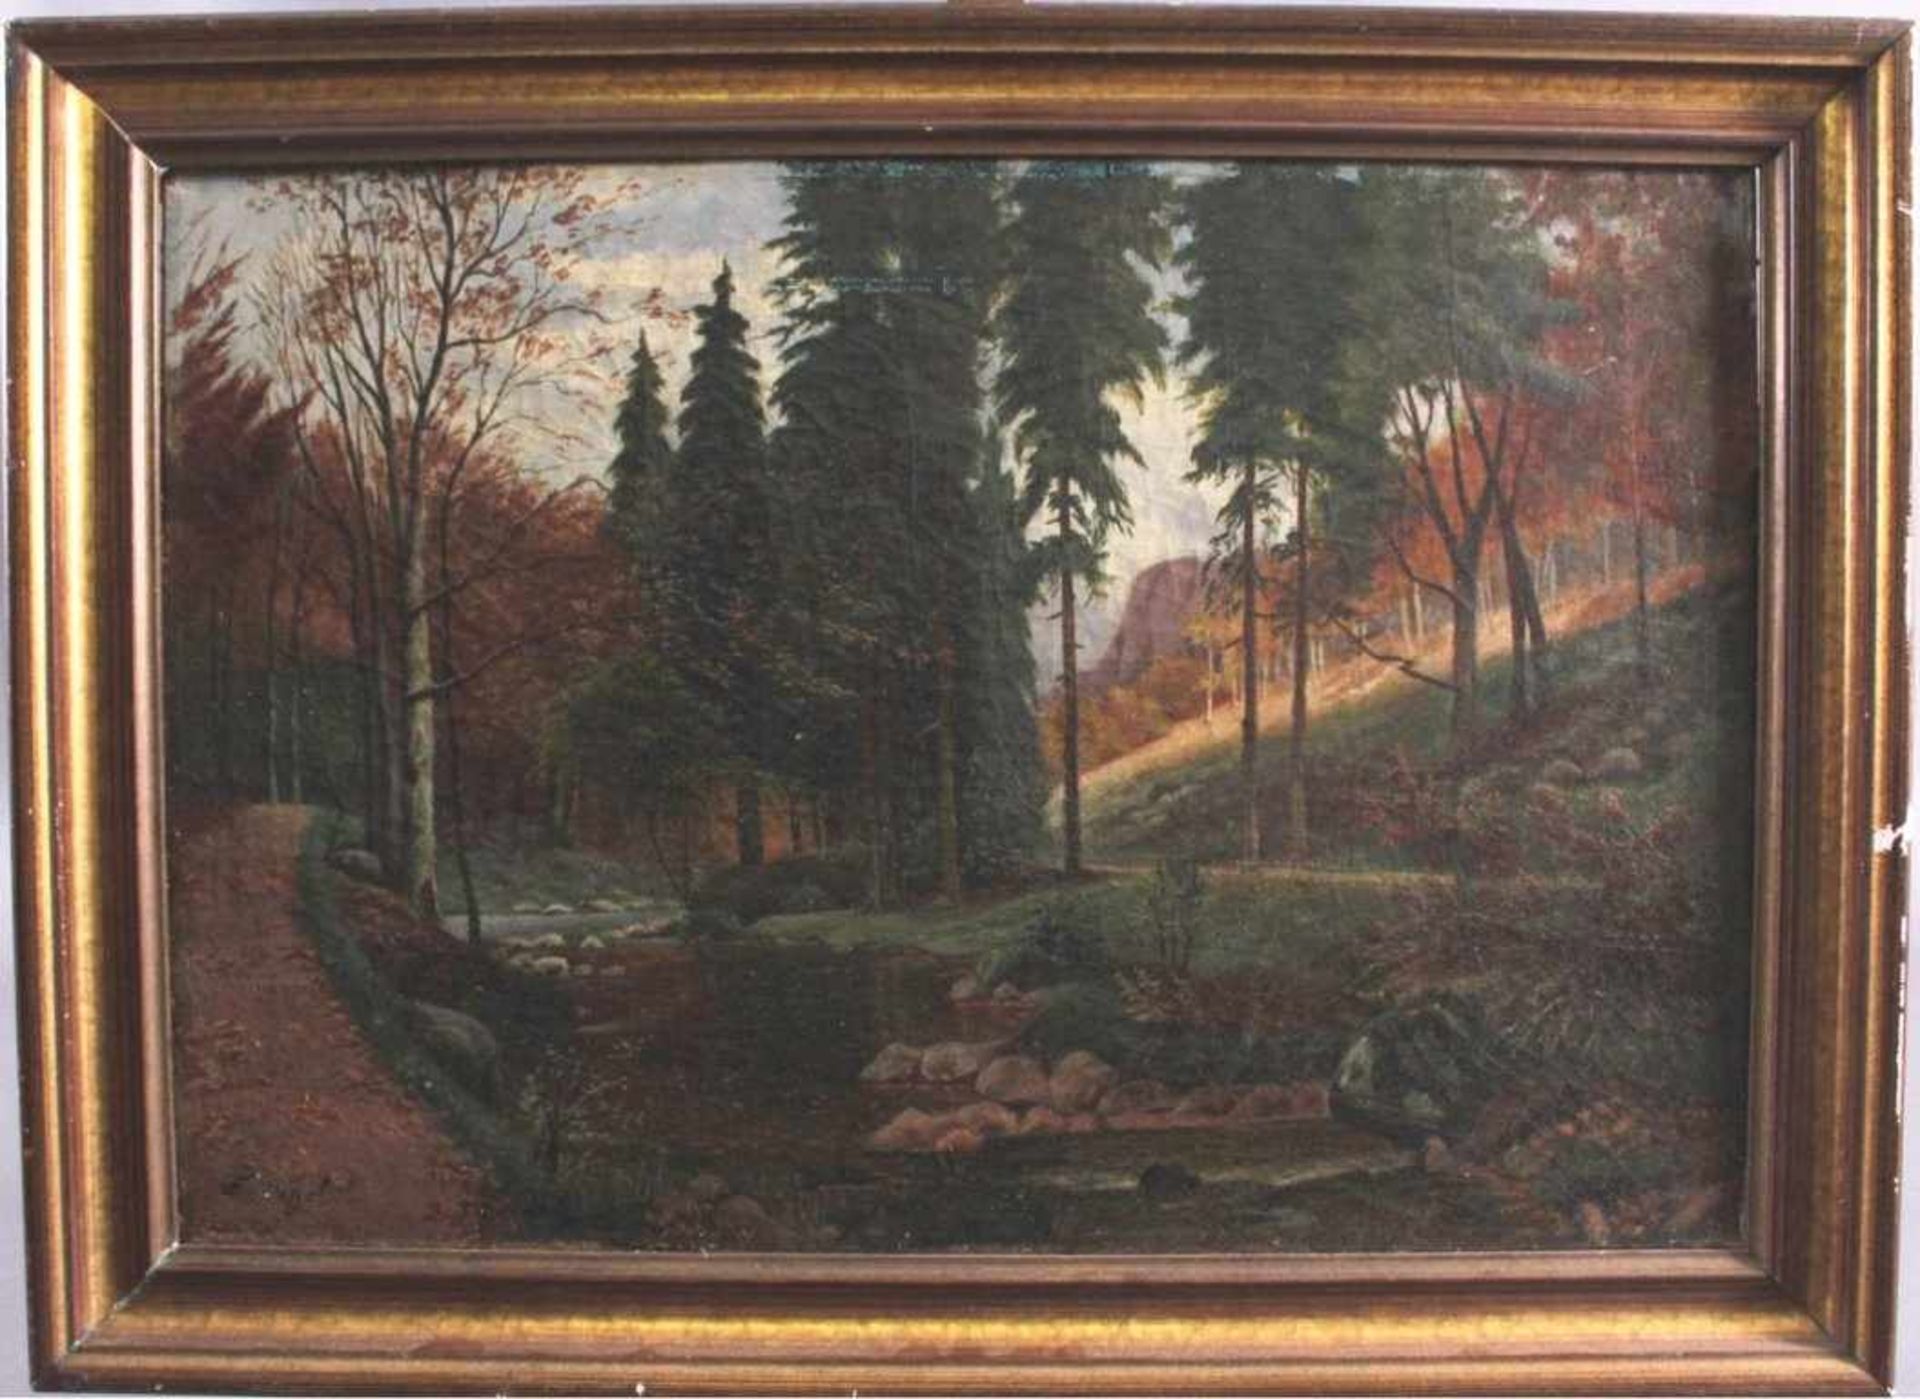 Sommerliche FlusslandschaftÖl auf Leinwand gemalt, ca. 43 x 63 cm. Unten linksbezeichnet F. Hagel, - Bild 2 aus 4